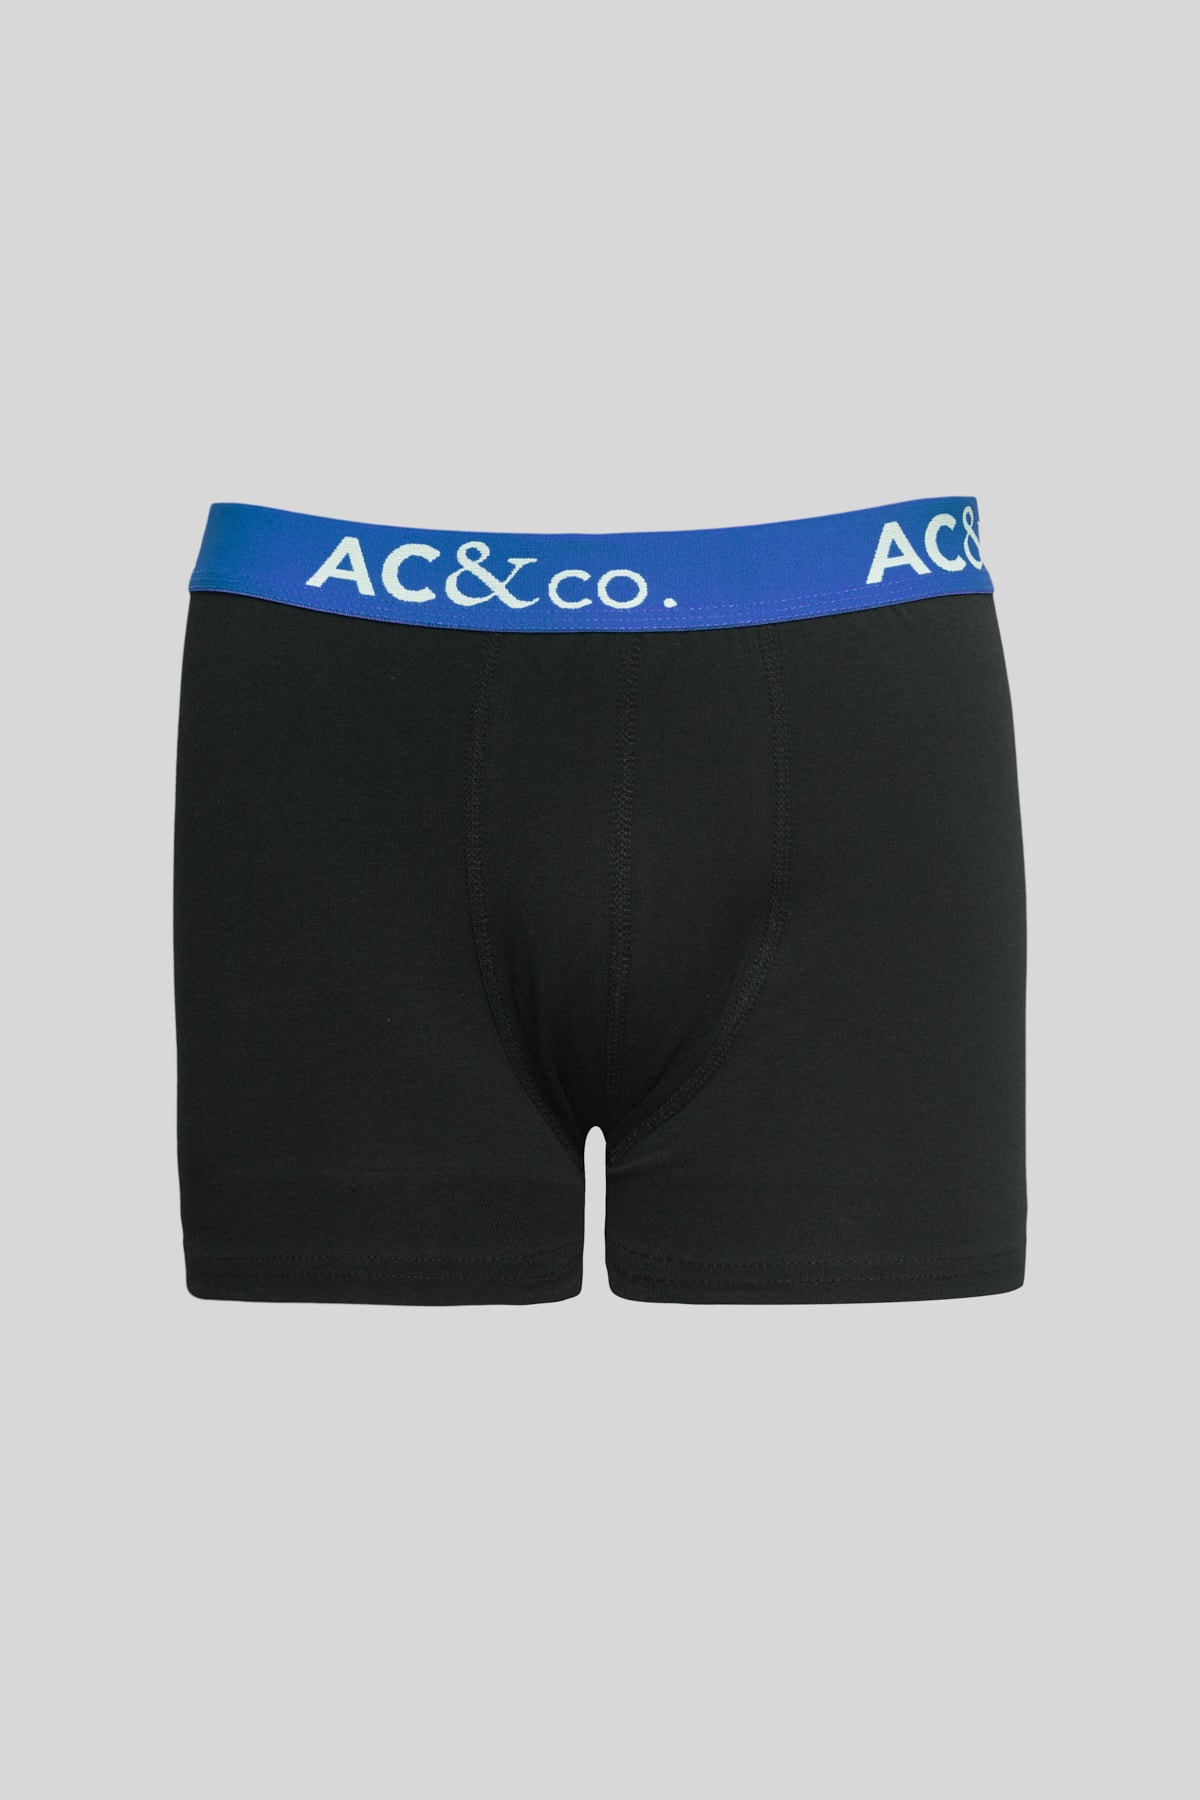 Levně AC&Co / Altınyıldız Classics Men's Multicolored 5-pack Cotton Flexible Boxer